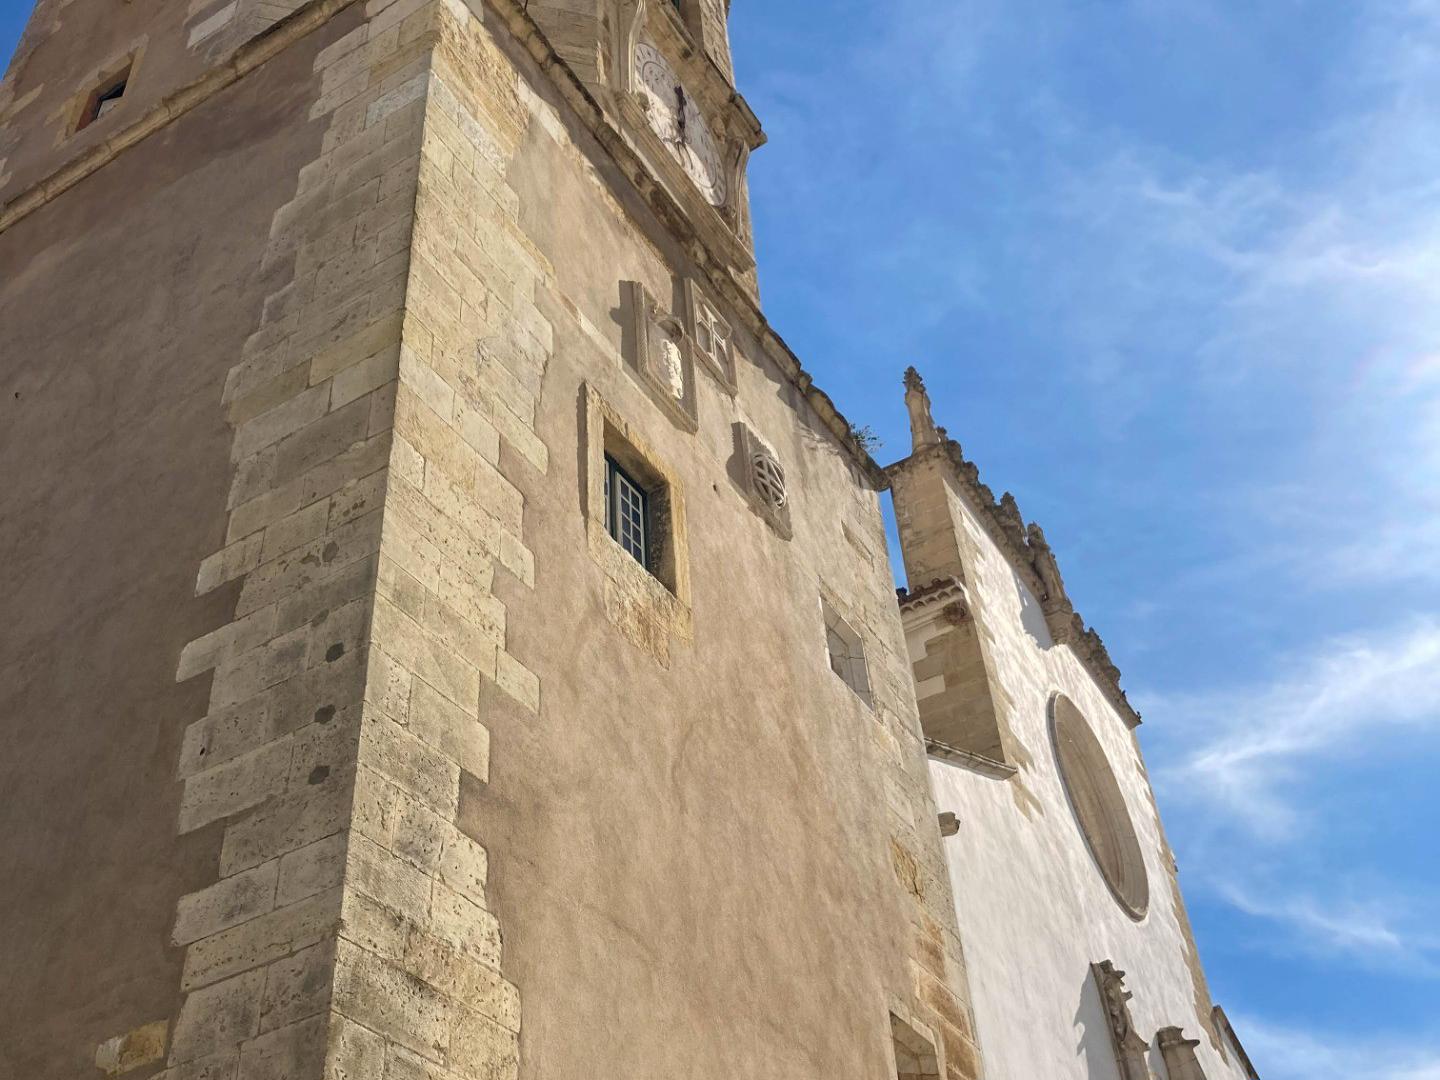 Torre - A Igreja apresenta uma planta retangular, estruturada em três naves e com uma torre sineira com um relógio do século XVI. Os seus portais são luxuosamente decorados ao estilo manuelino.